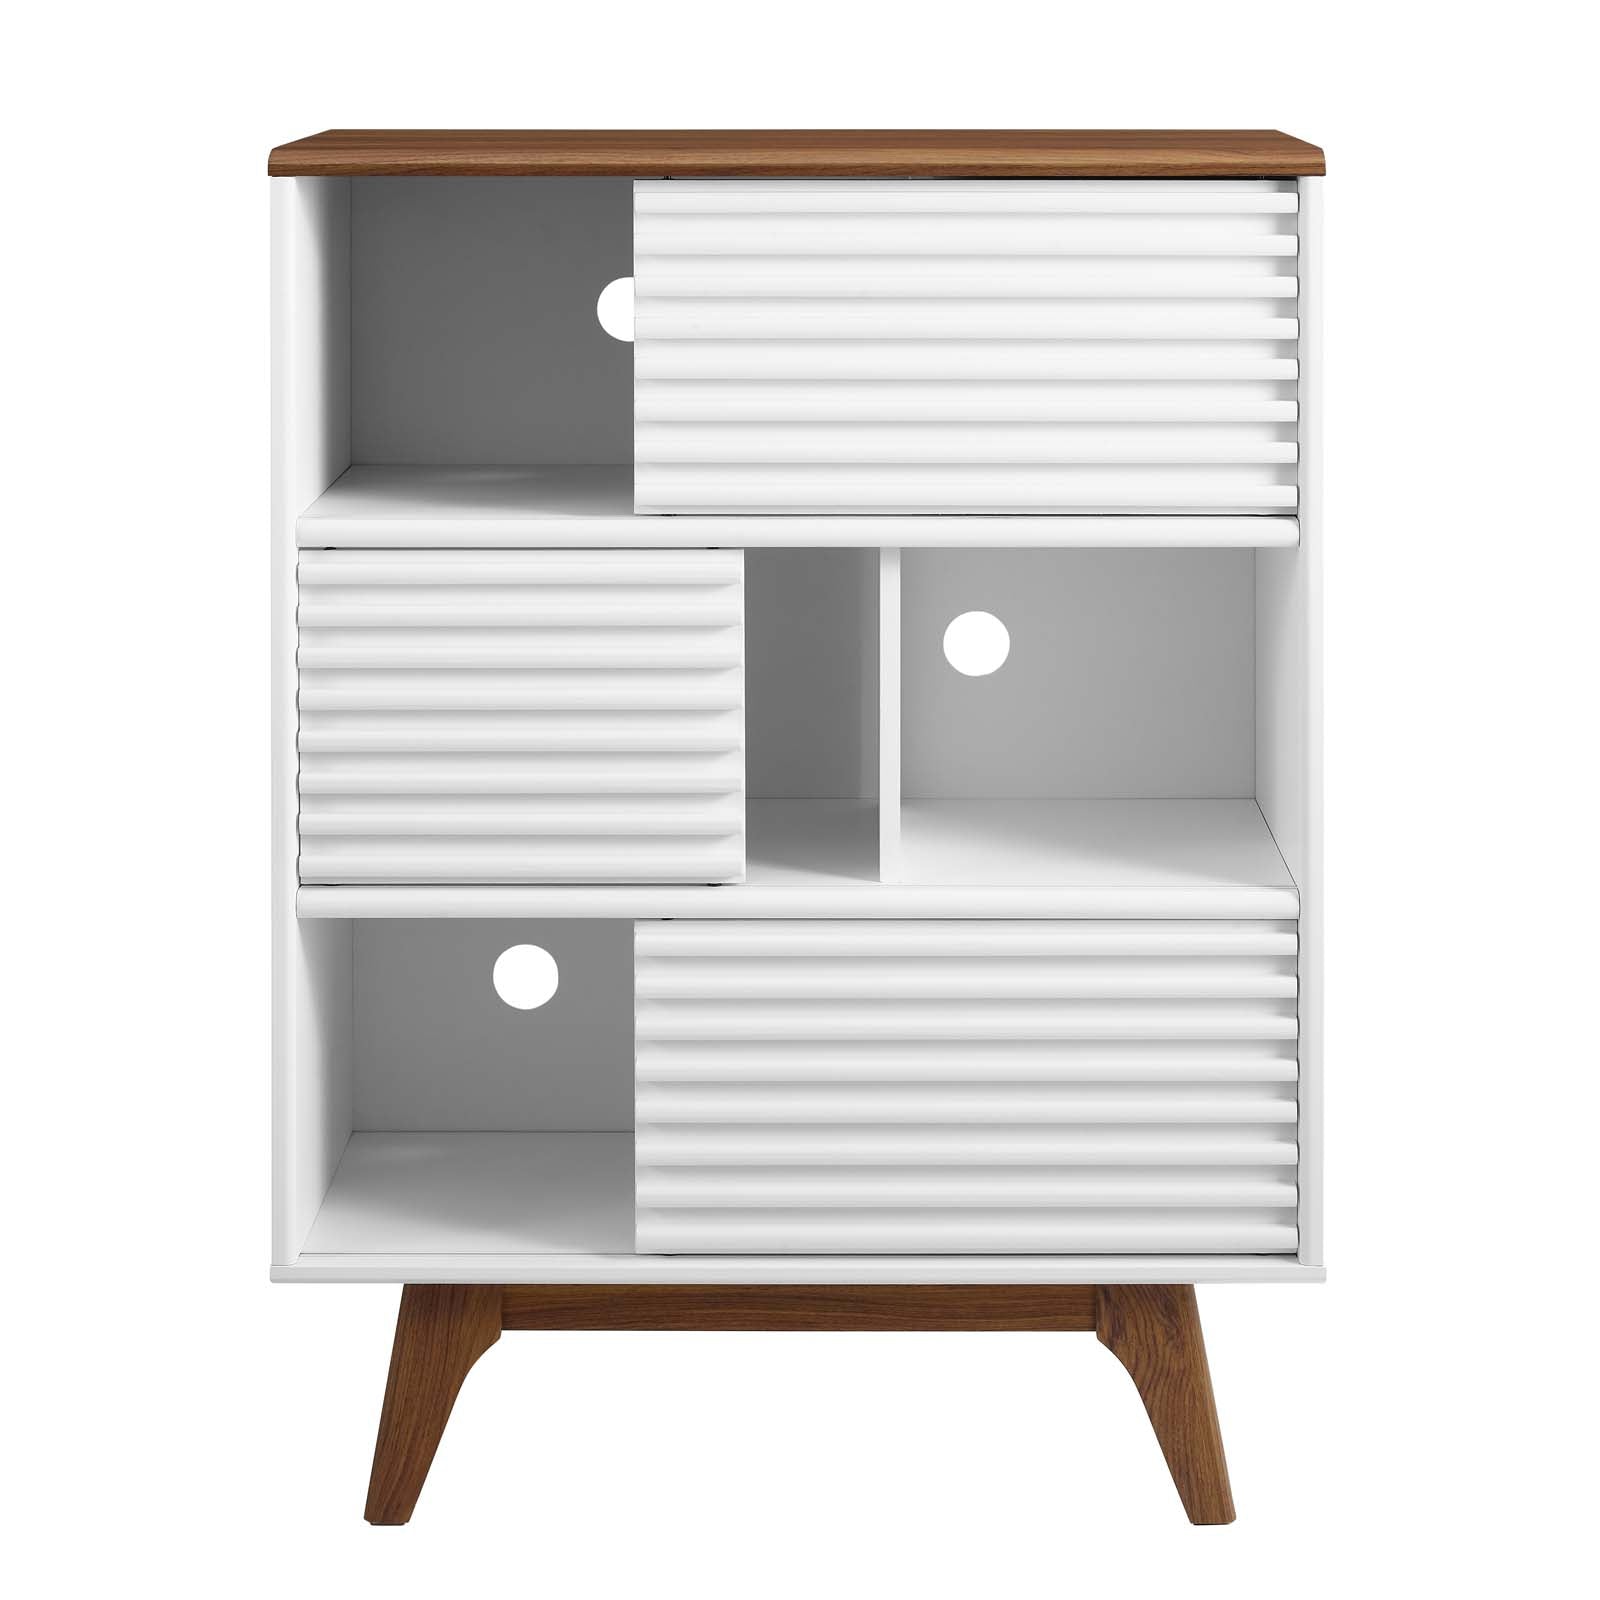 Render Three-Tier Display Storage Cabinet Stand